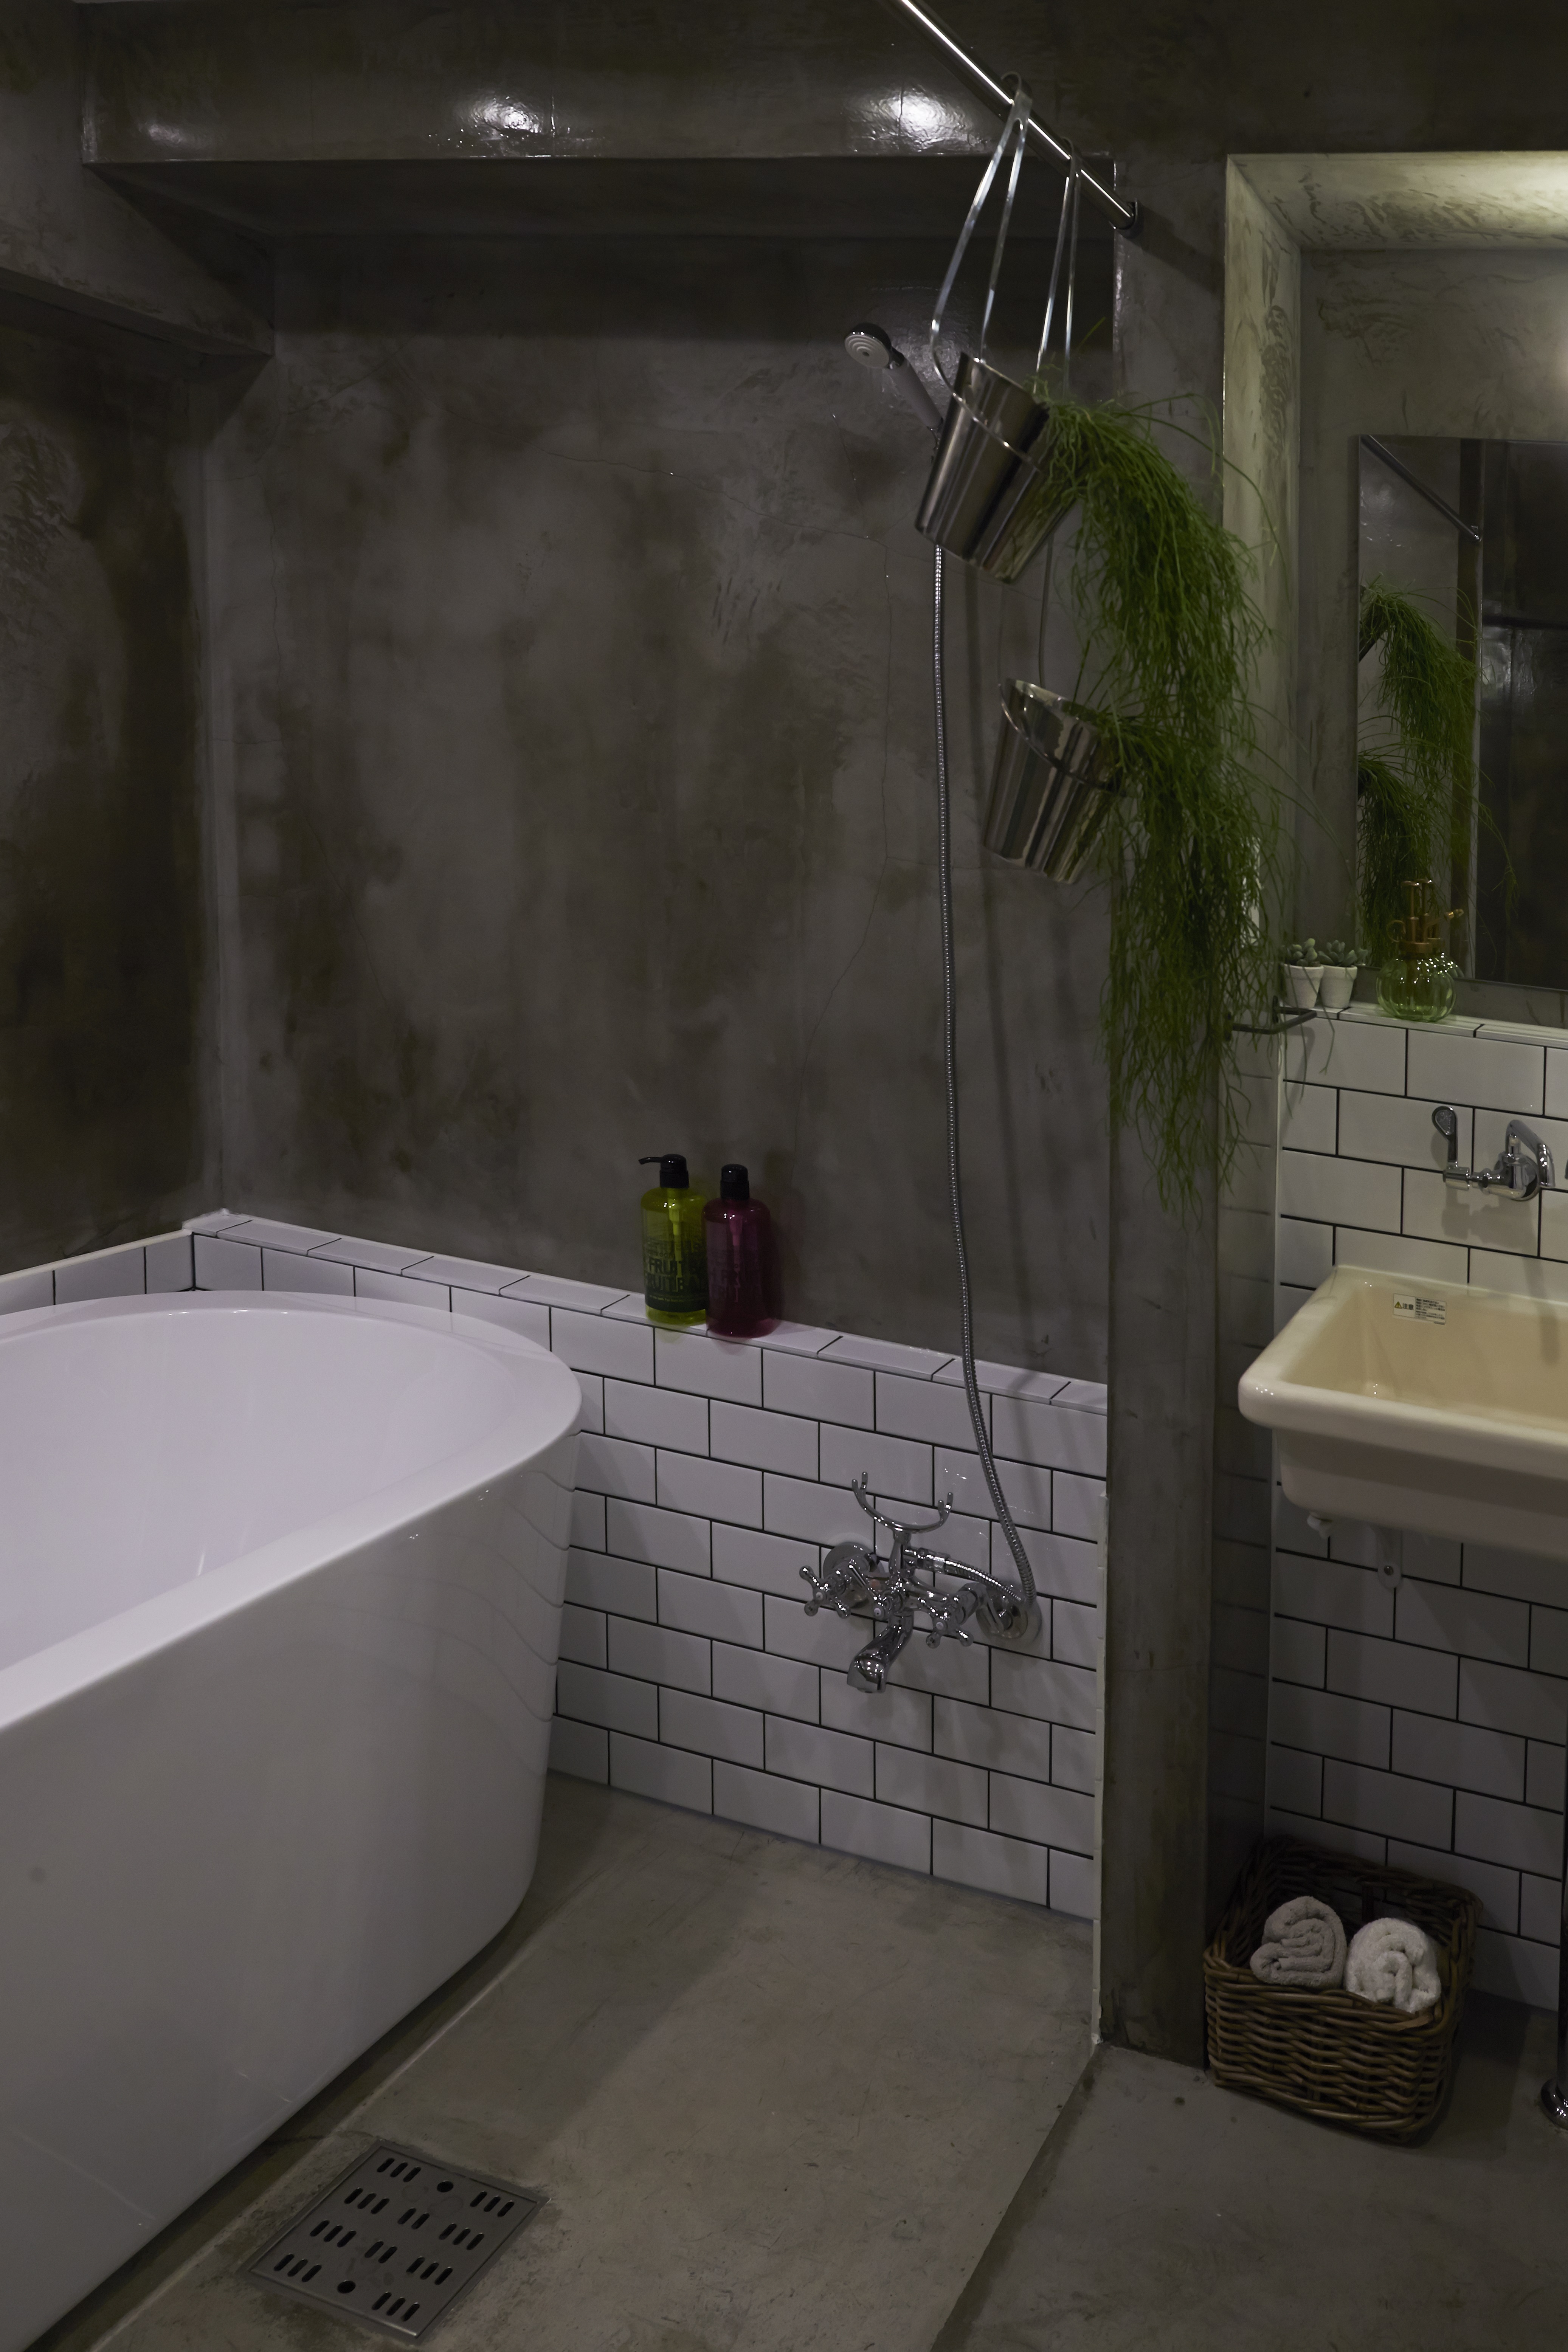 おしゃれな浴室のリフォーム事例11選 ユニットバスと在来工法のお風呂を紹介 リノベーションのshuken Re マンション 住宅 中古物件をリフォームやリノベで住みやすくデザインし施工します